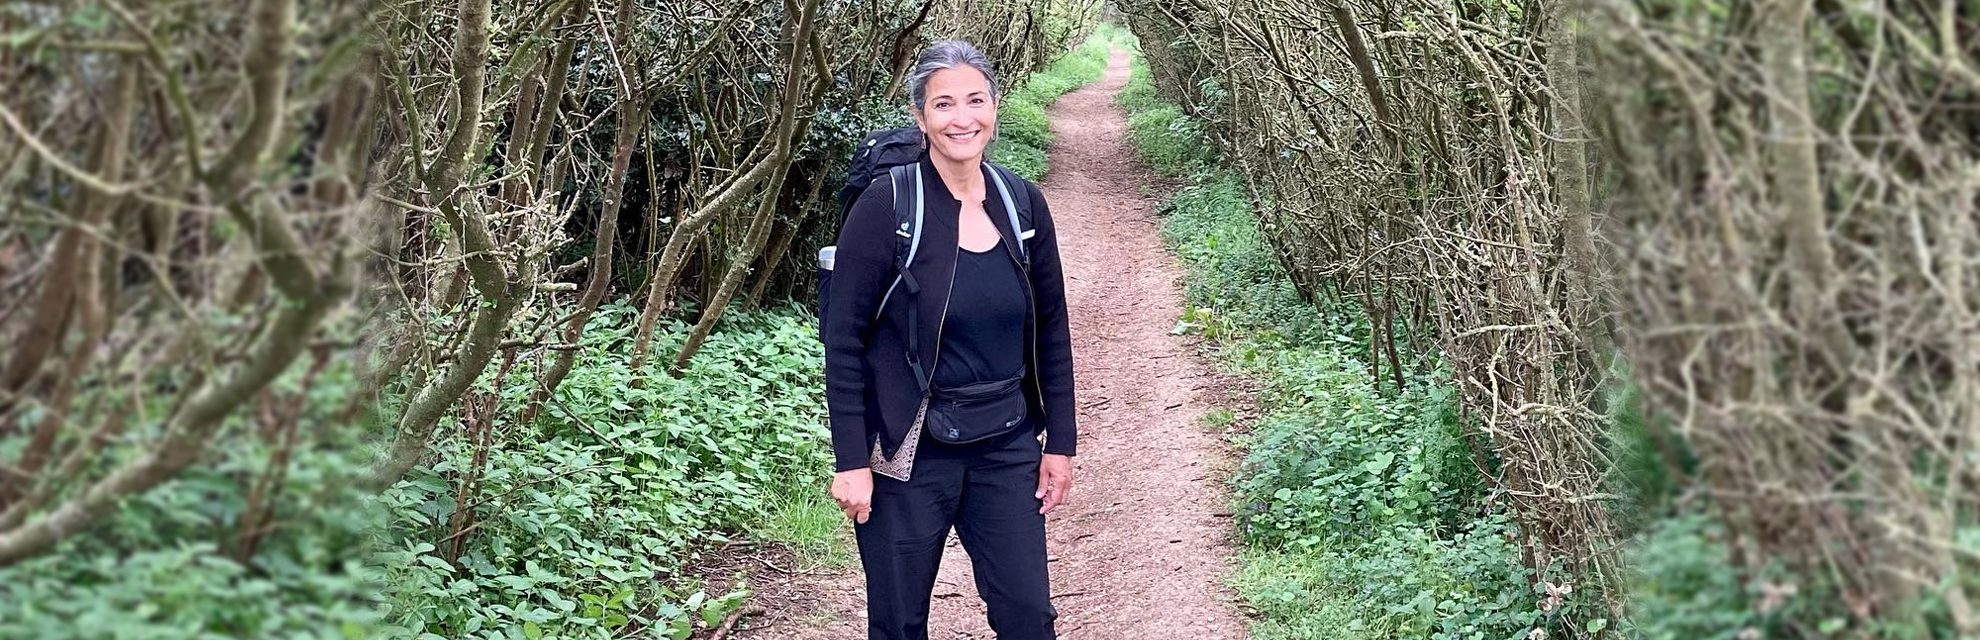 Enfrentando as probabilidades: Sara Adhikari caminha 800 km com sua irmã para ajudar sobreviventes de ataque com ácido